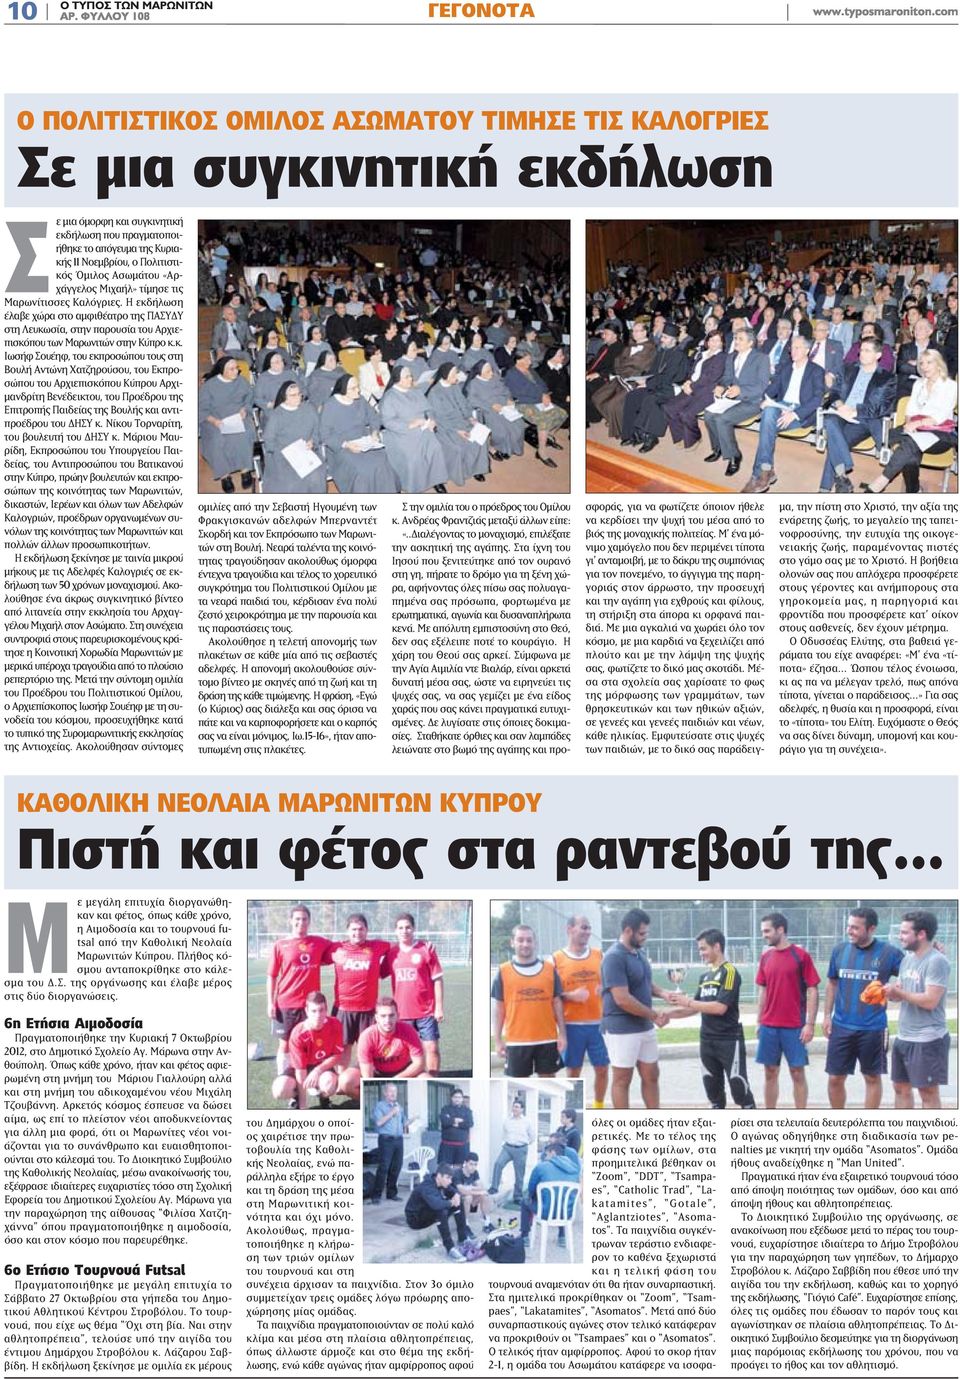 Η εκδήλωση έλαβε χώρα στο αμφιθέατρο της ΠΑΣΥΔΥ στη Λευκωσία, στην παρουσία του Αρχιεπισκόπου των Μαρωνιτών στην Κύπρο κ.κ. Ιωσήφ Σουέηφ, του εκπροσώπου τους στη Βουλή Αντώνη Χατζηρούσου, του